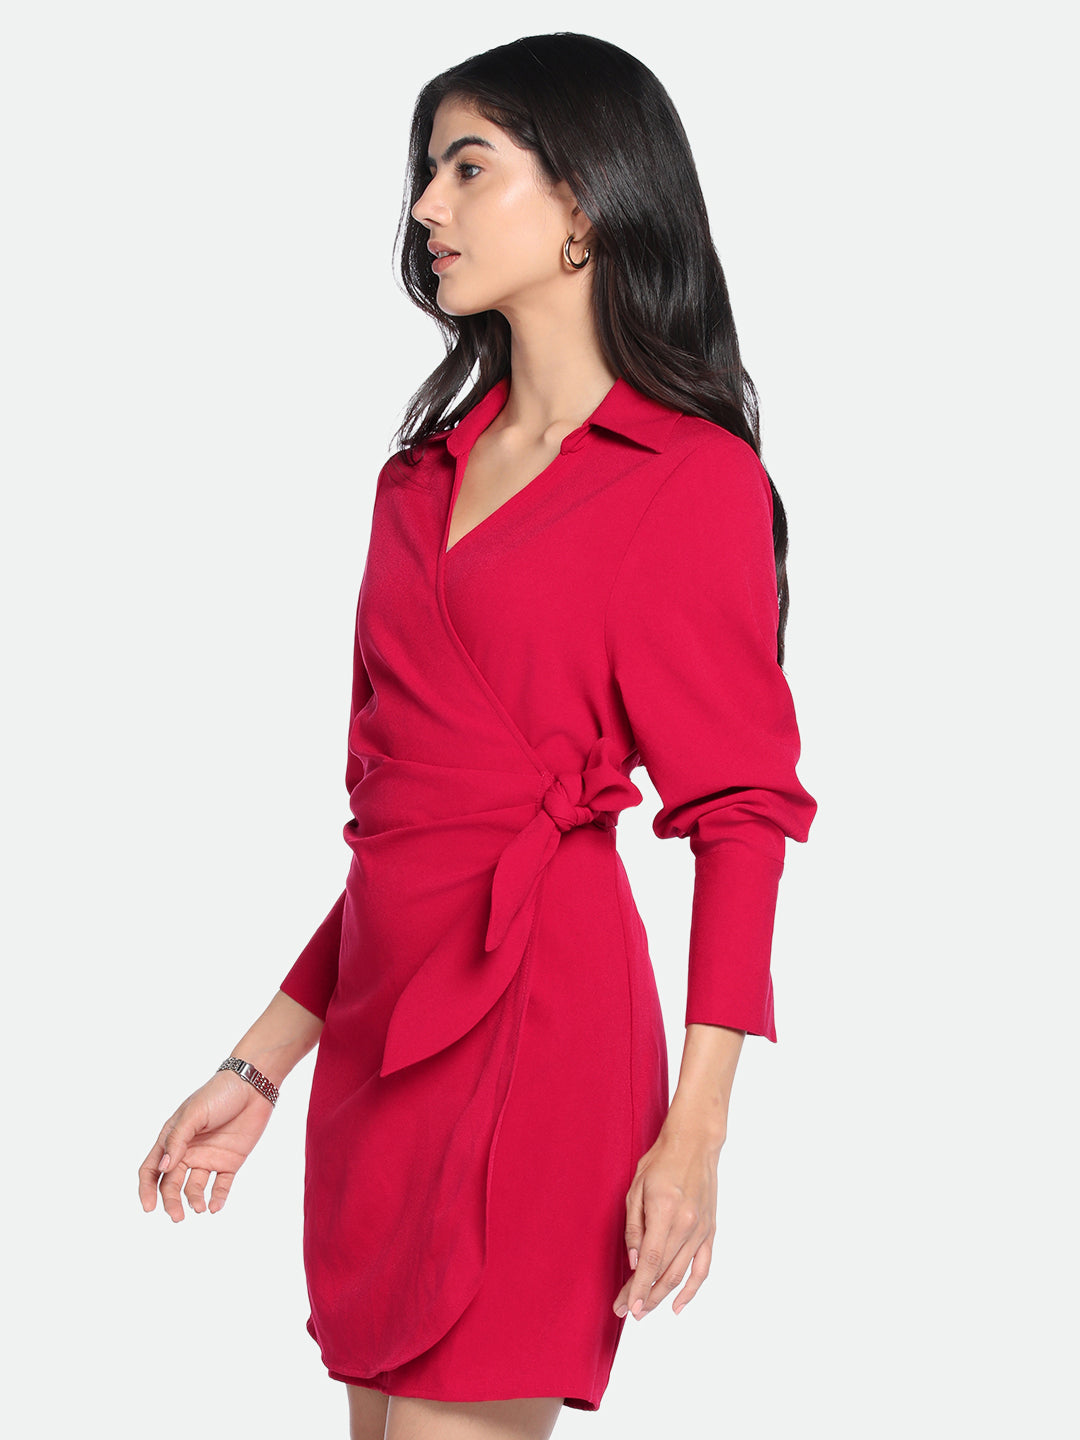 DL Woman V- Neck Regular Fit Solid Red Wrap Dress